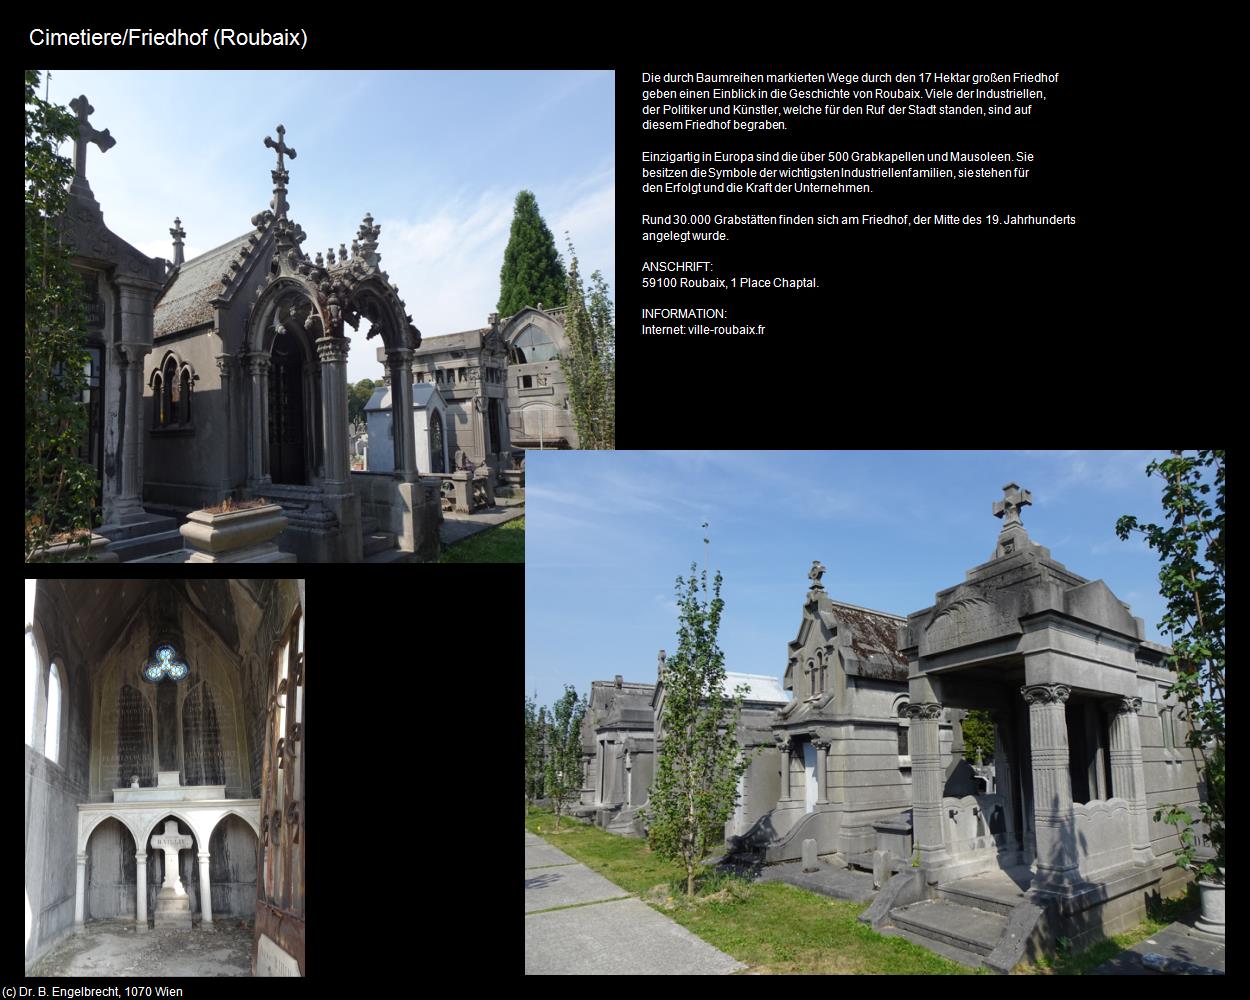 Cimetiere/Friedhof (Roubaix (FR-HDF)) in Kulturatlas-FRANKREICH